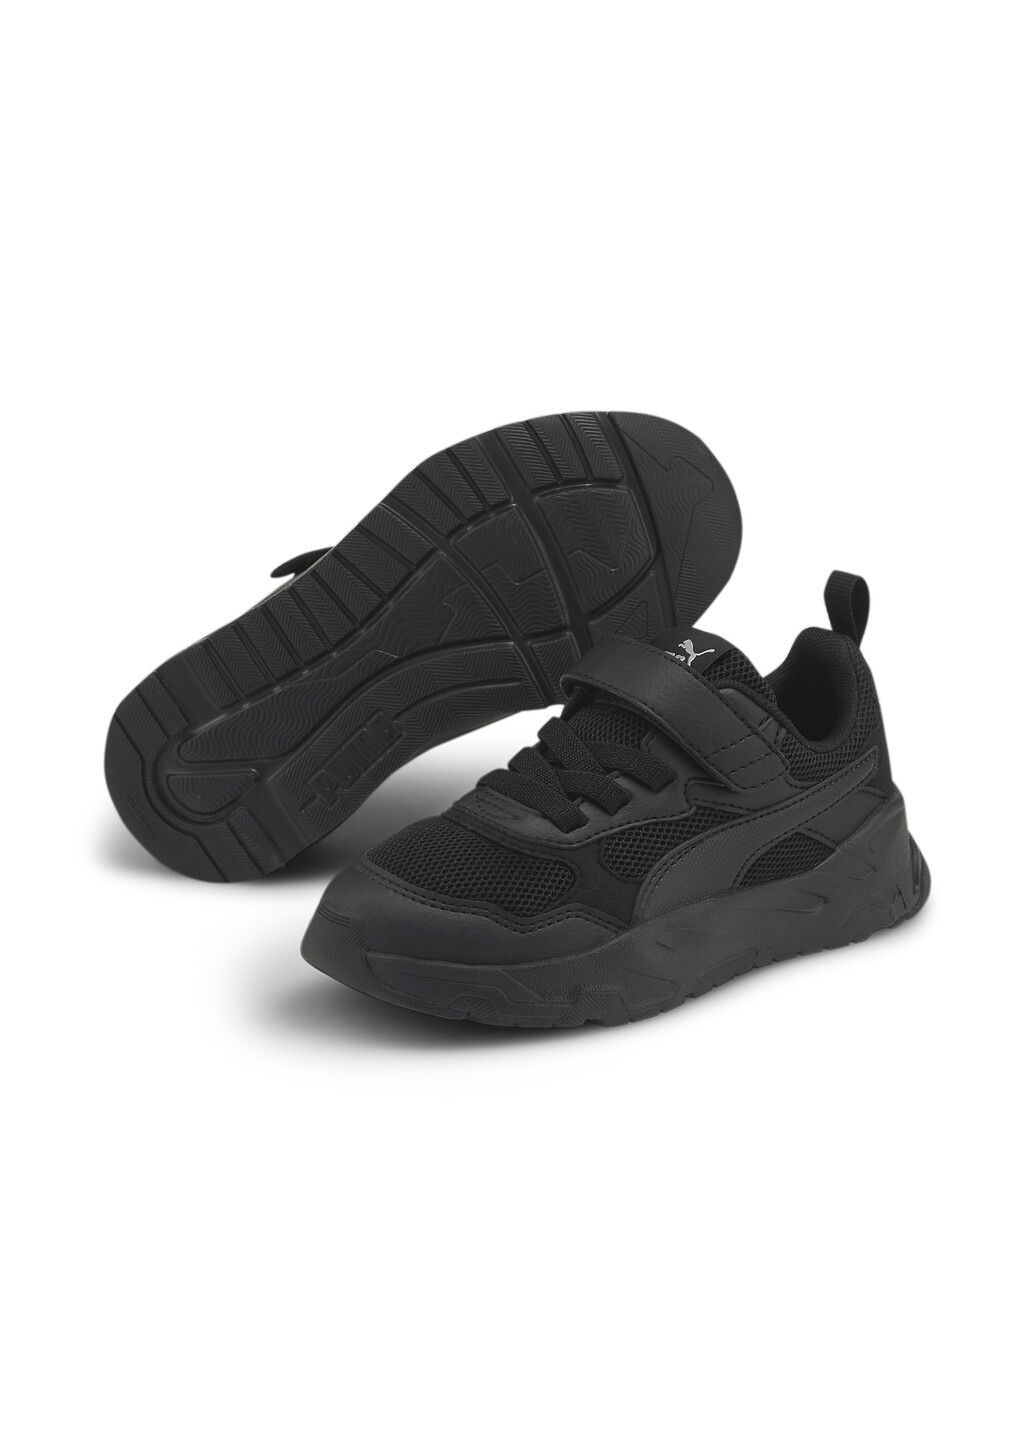 Черные всесезонные детские кроссовки trinity sneakers youth Puma